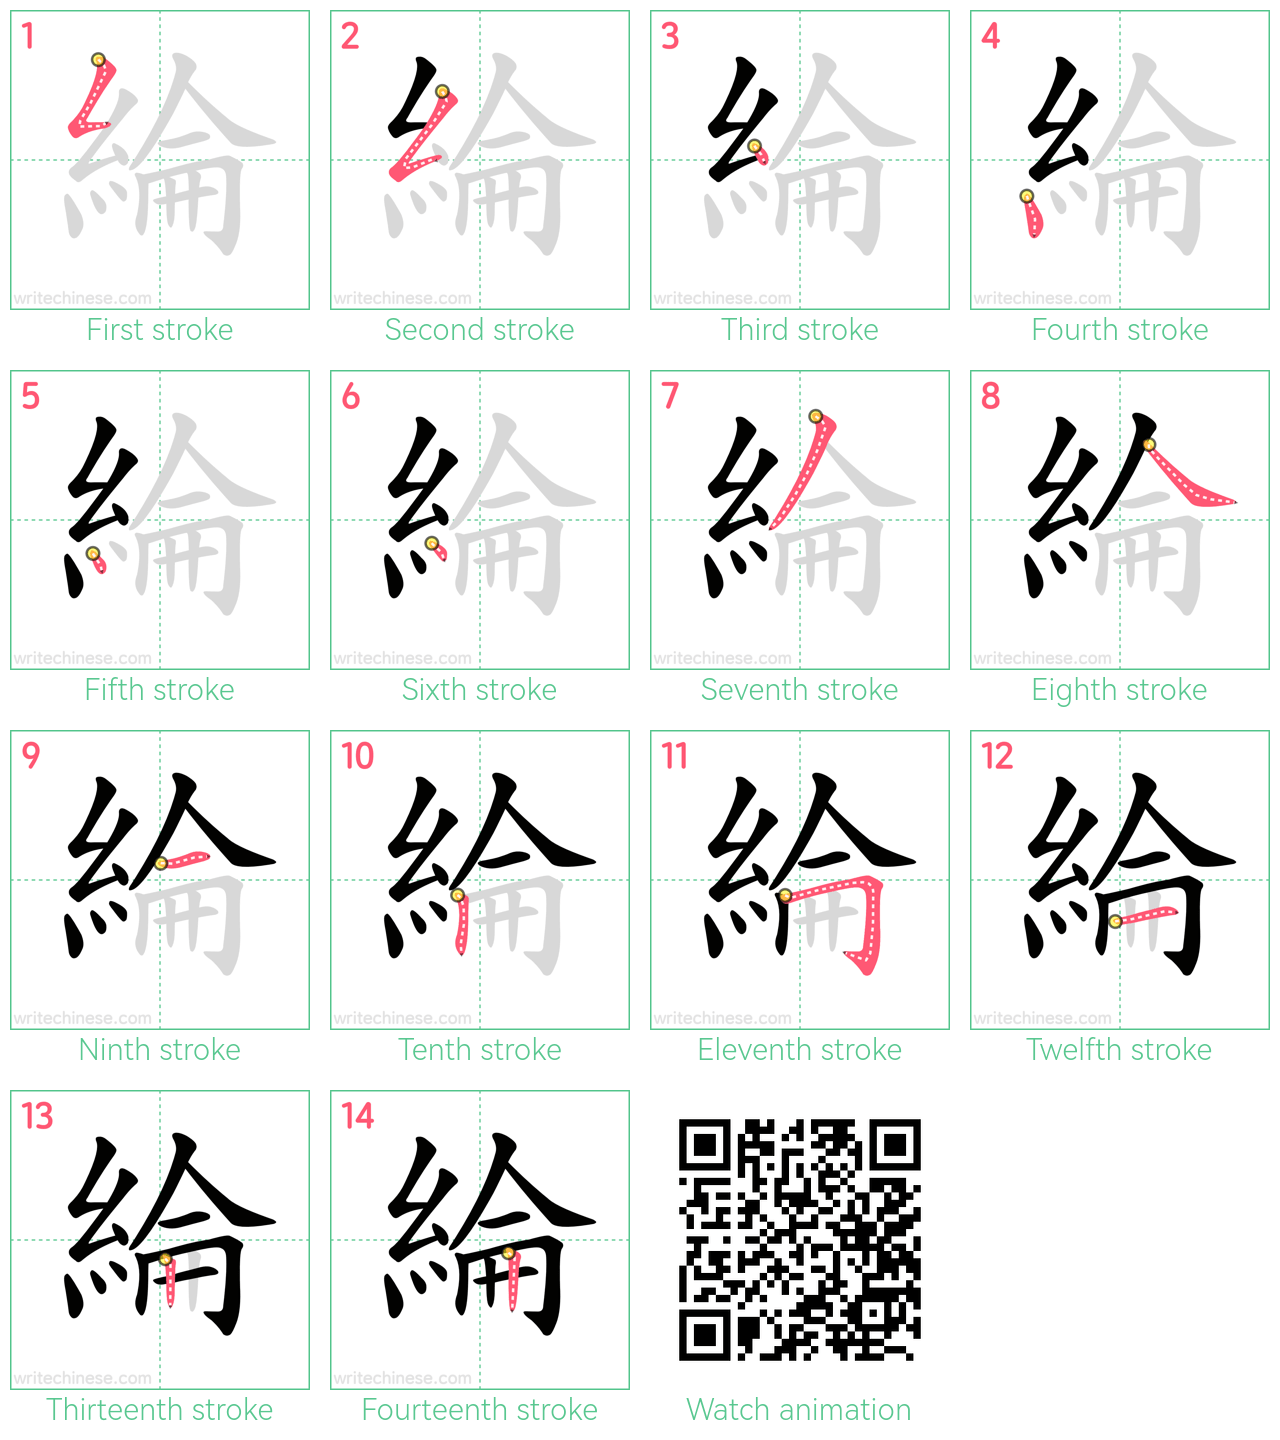 綸 step-by-step stroke order diagrams